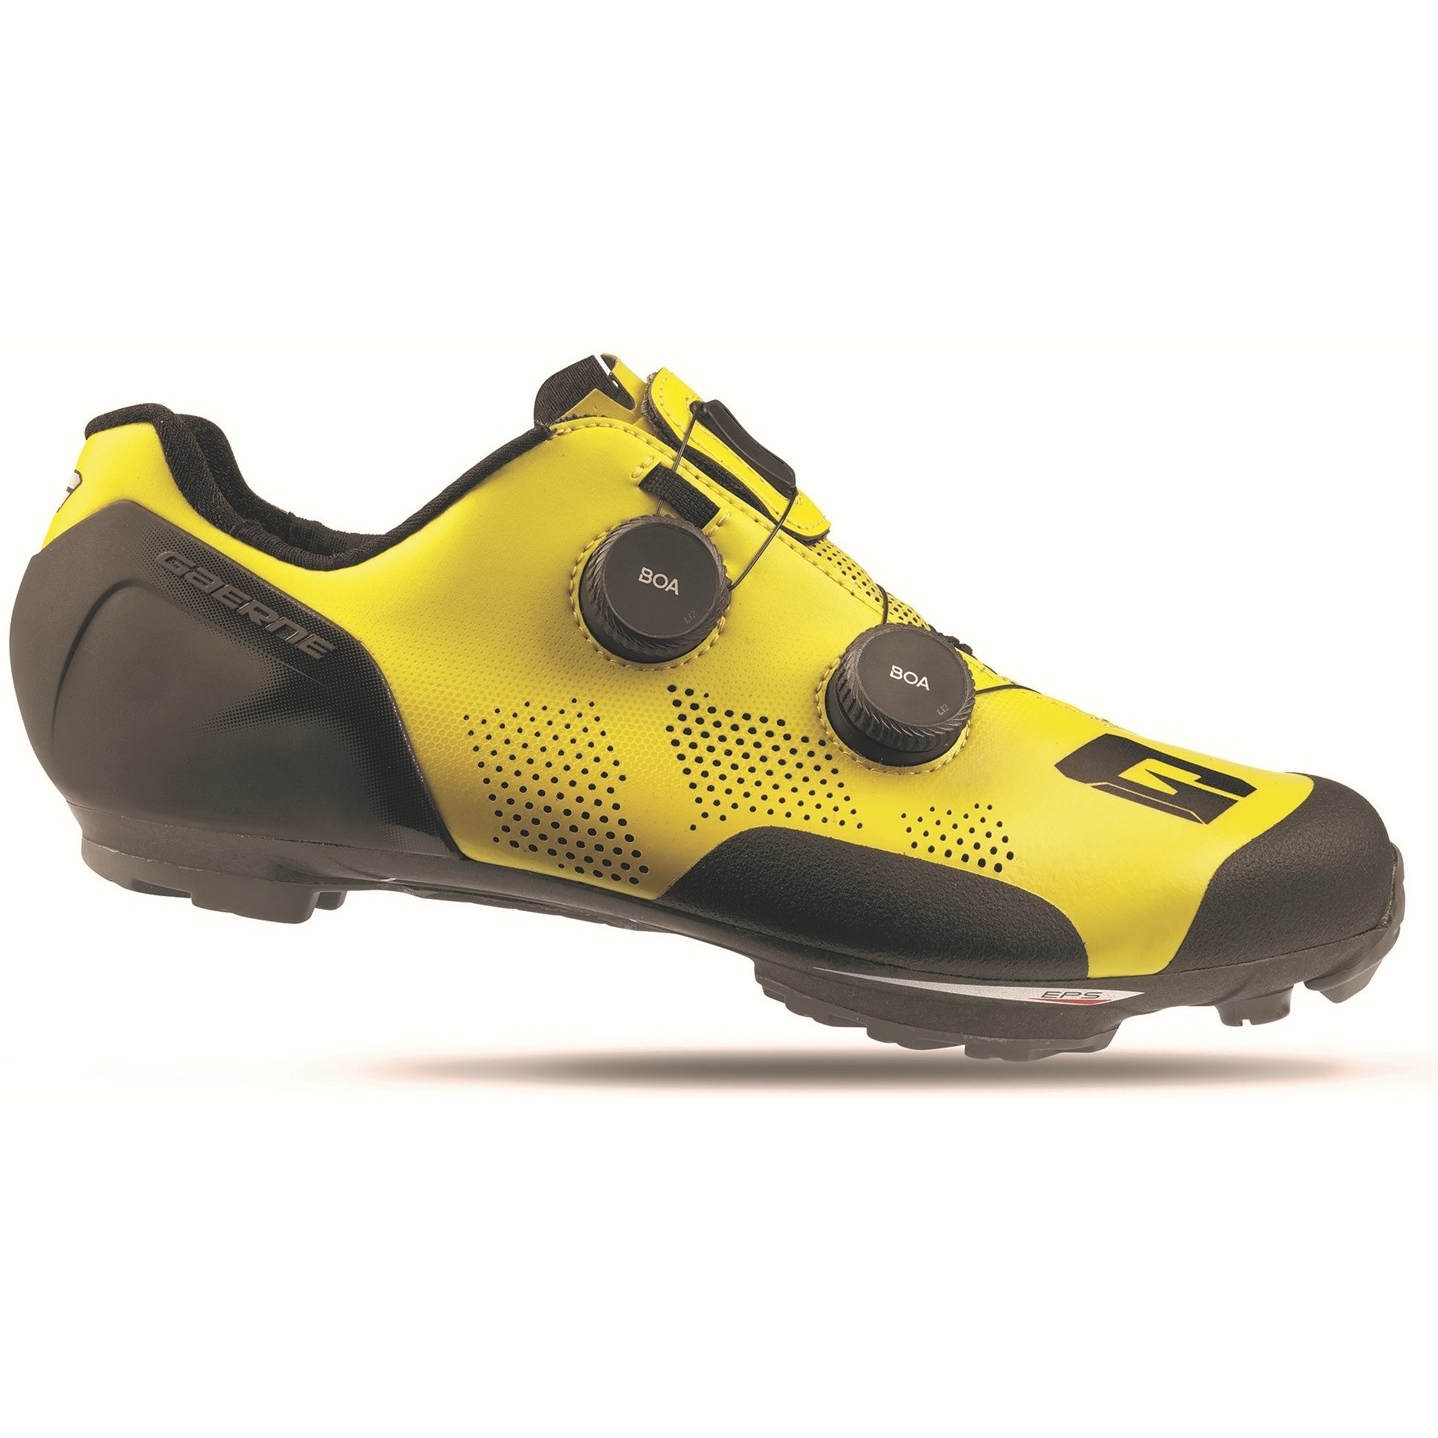 Produktbild von Gaerne Carbon G. SNX MTB Schuhe - gelb